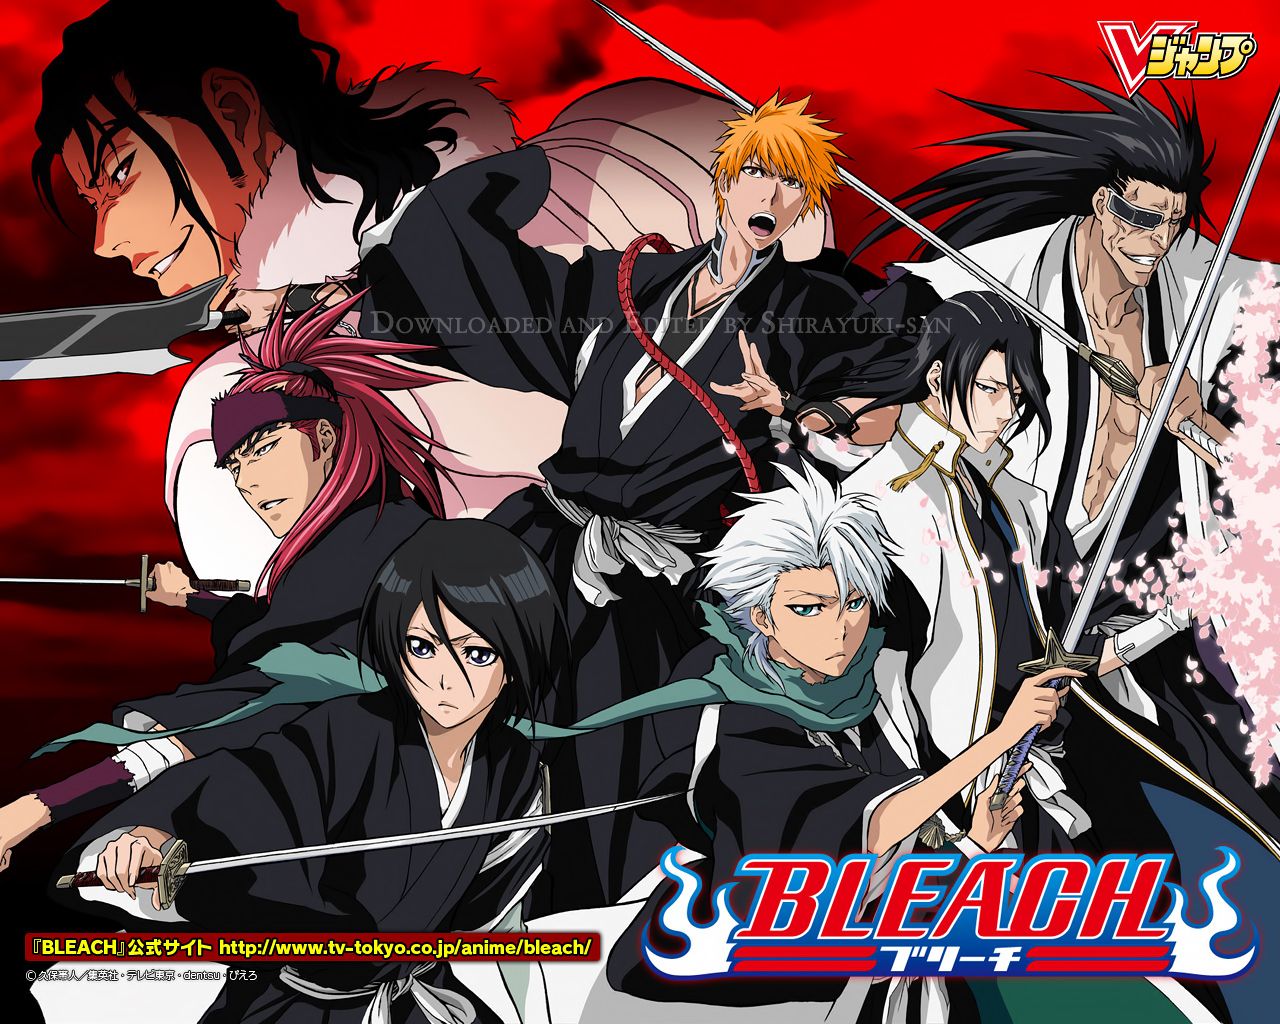 Bleach Characters - Bleach Anime Wallpaper 36548022 - Fanpop